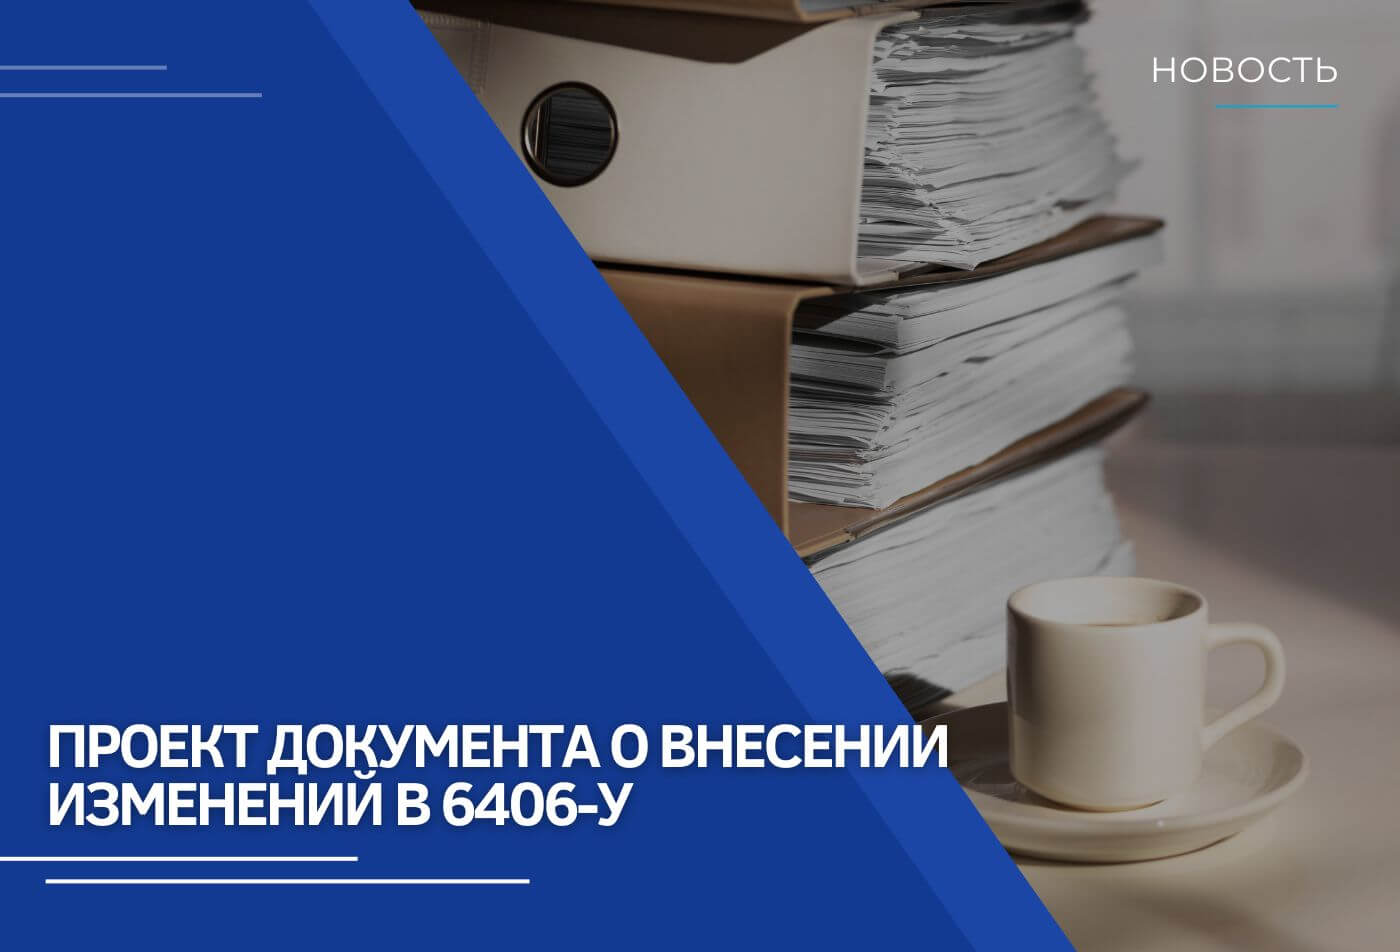 Проект документа о внесении изменений в Указание Банка России № 6406-У